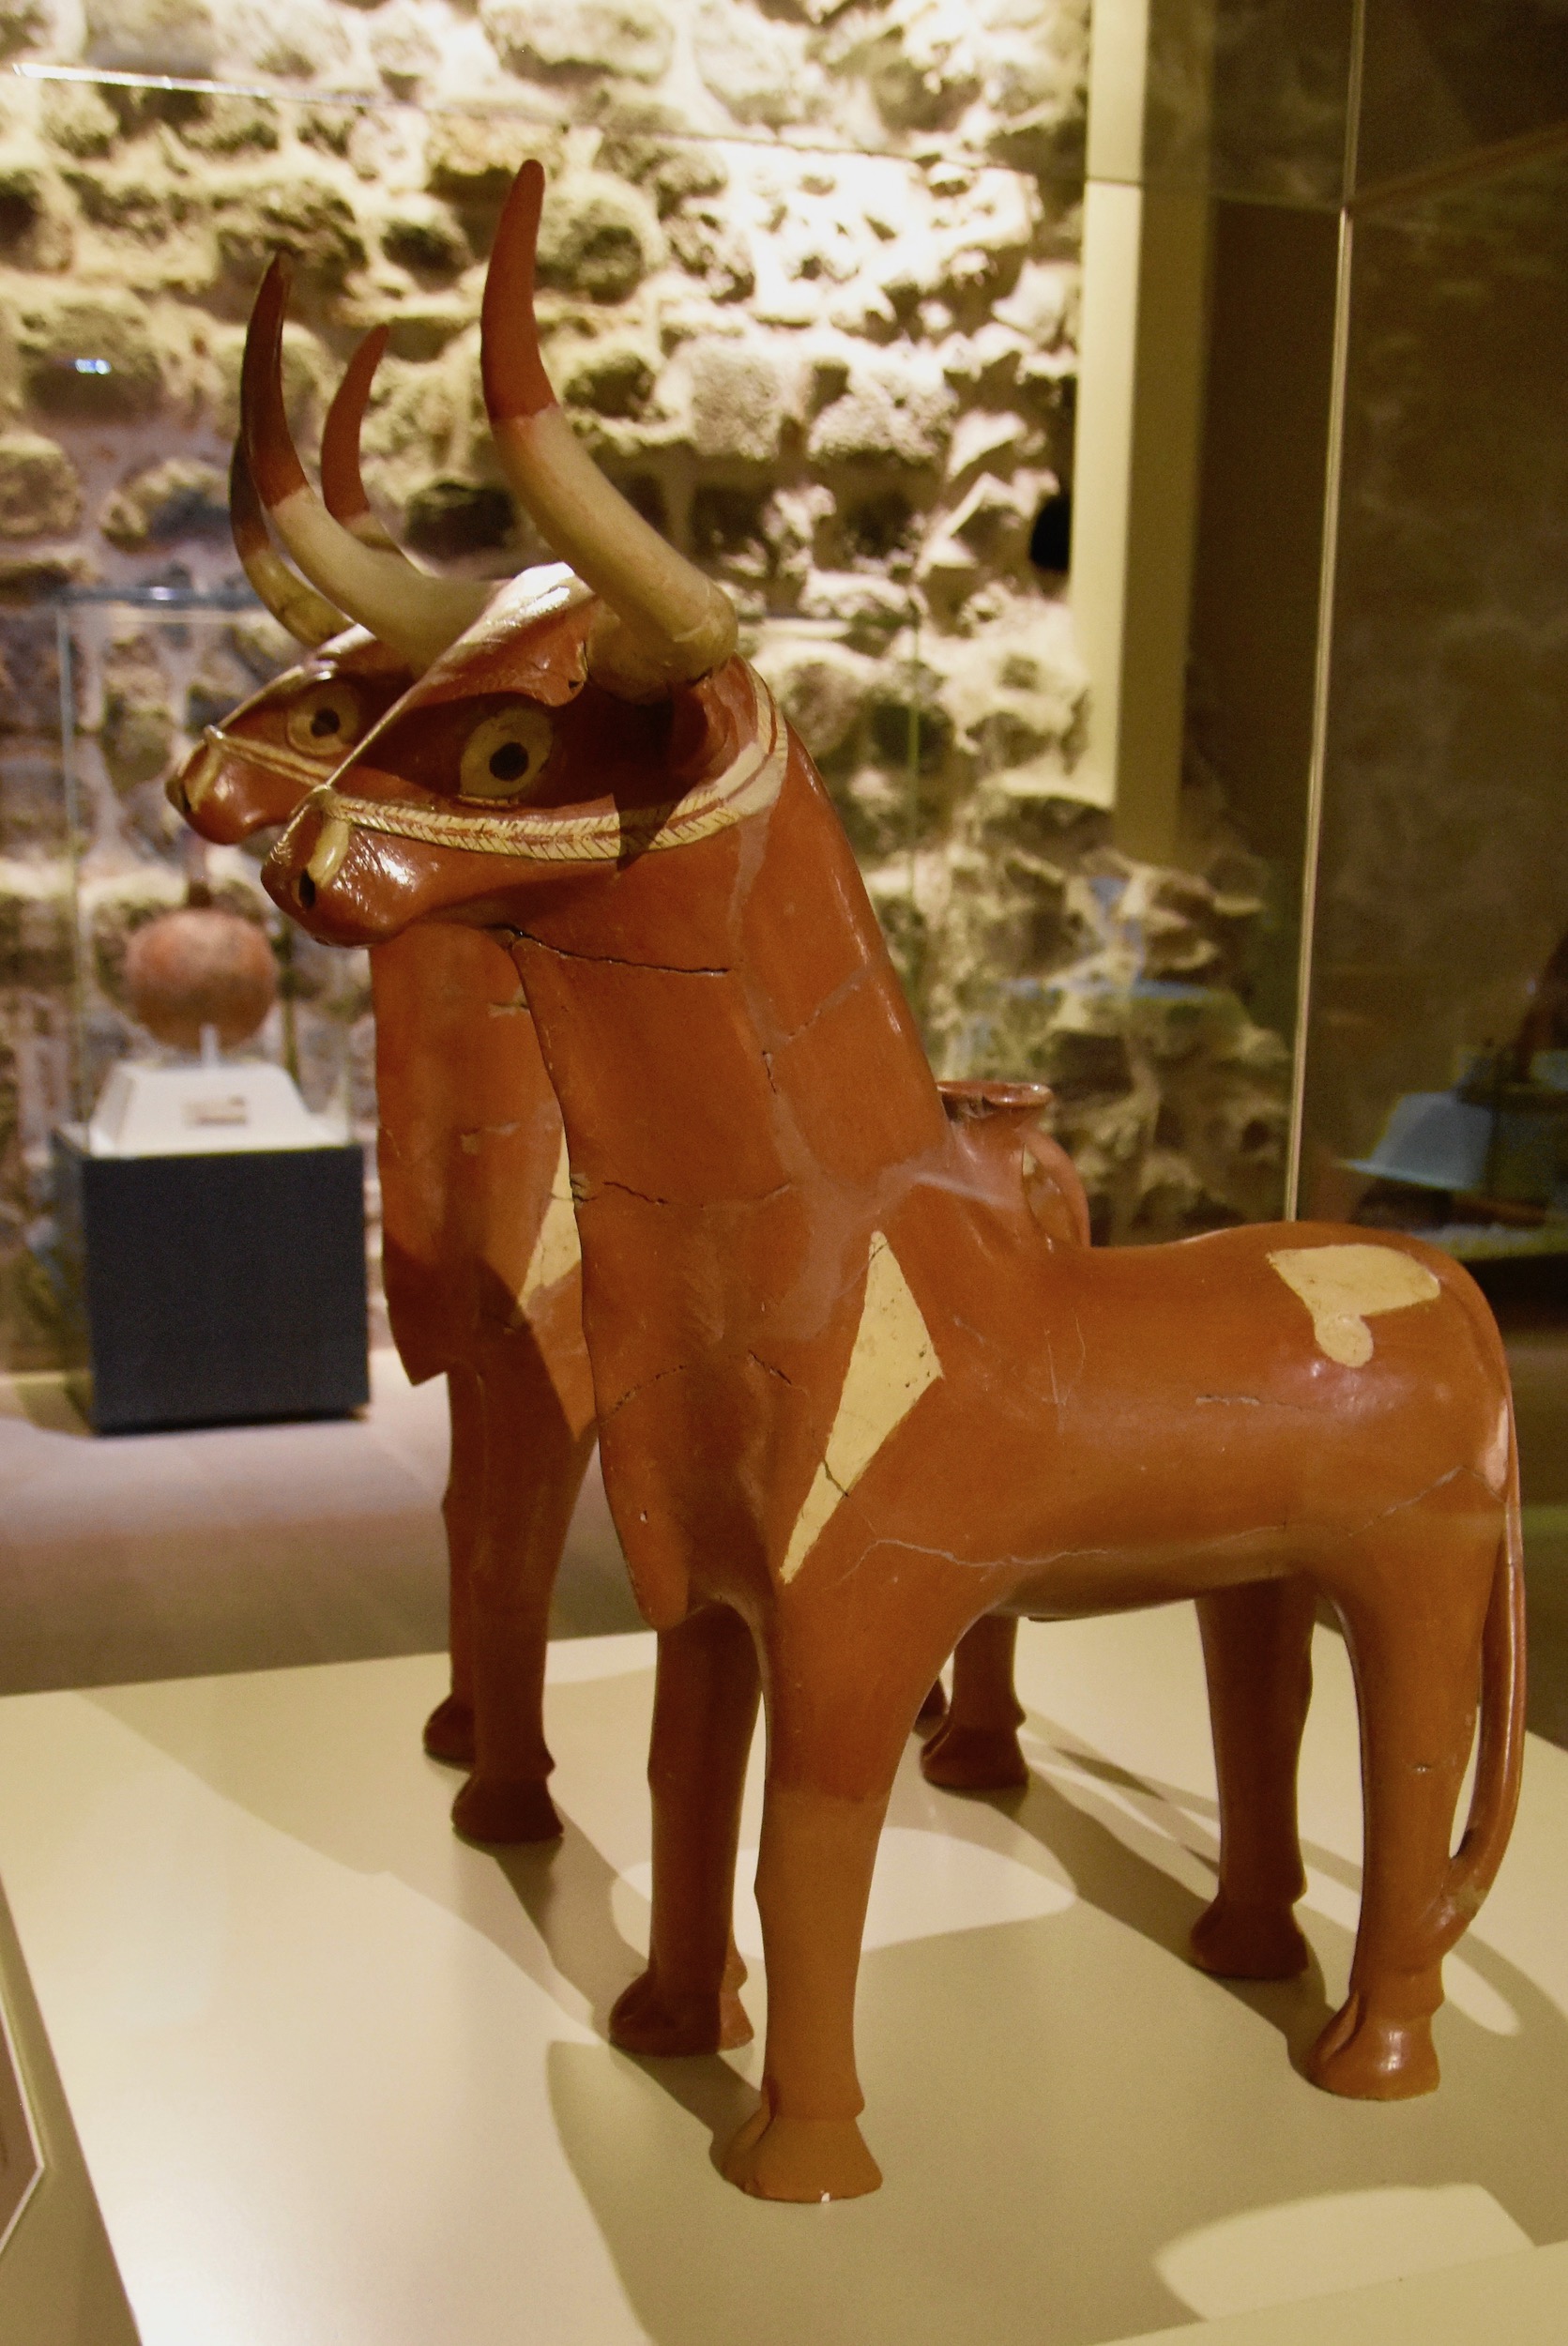 Hittite Pottery Bulls, Museum of Anatolian Civilizations